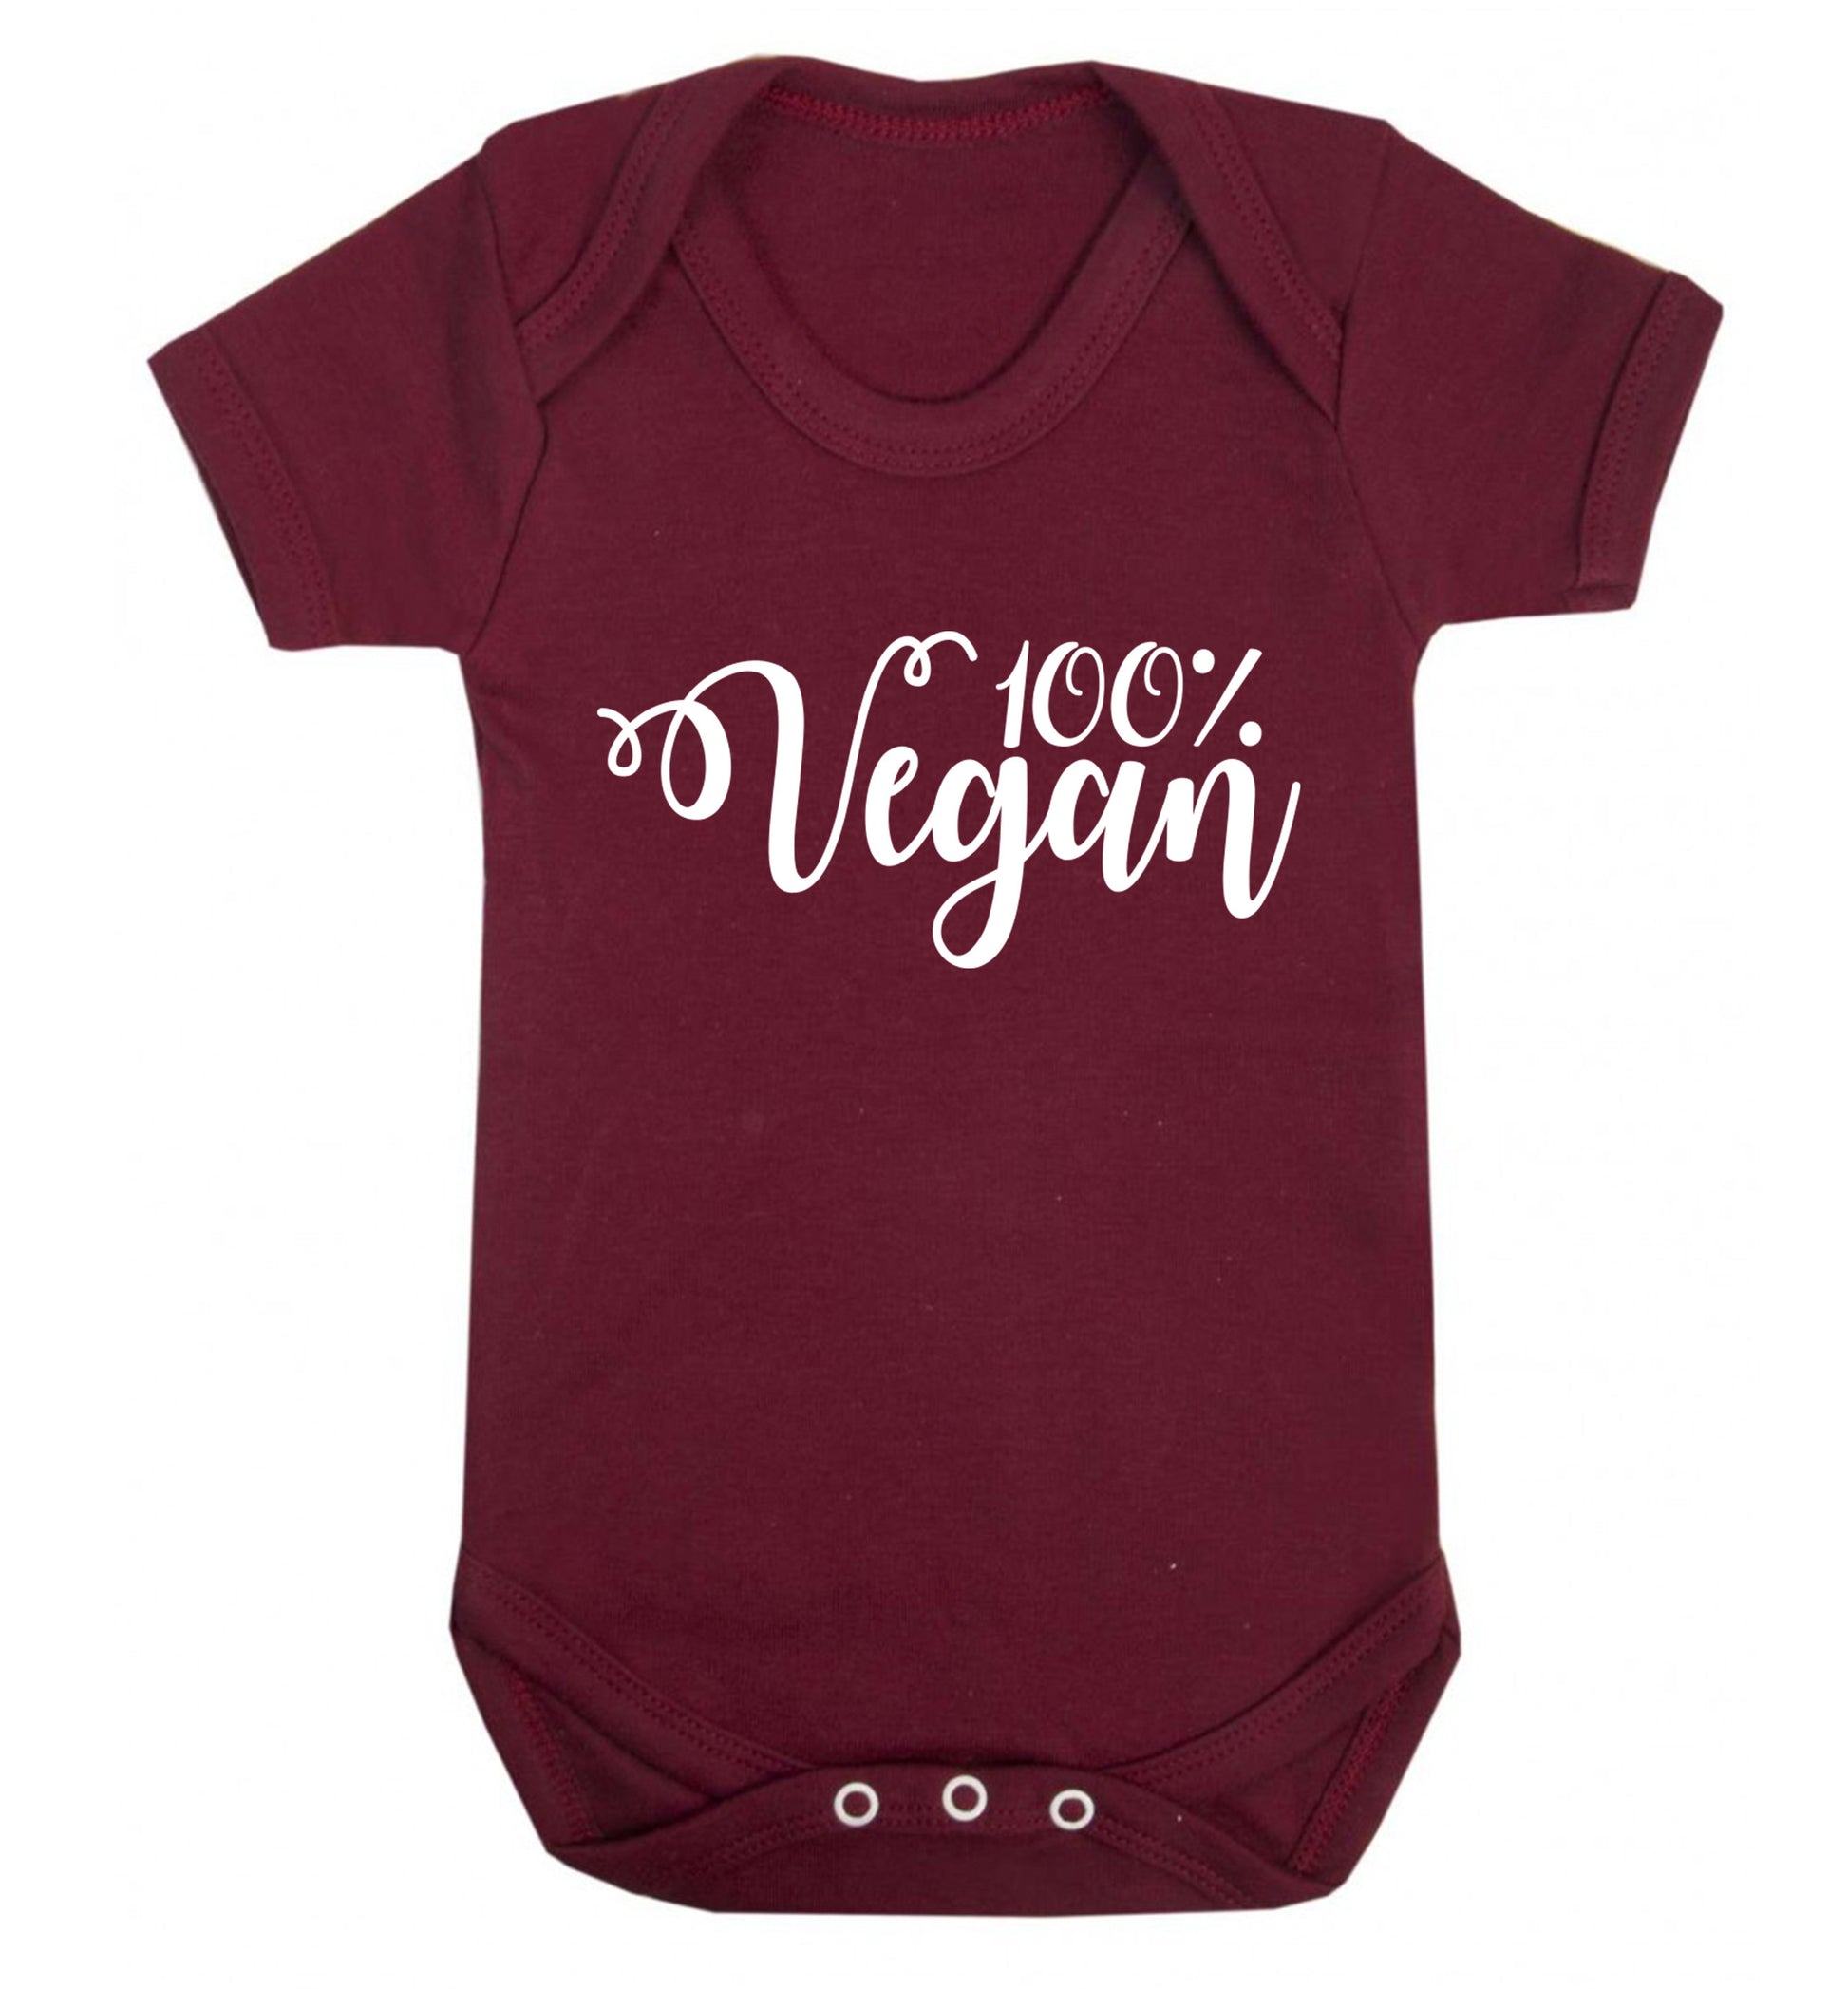 100% Vegan Baby Vest maroon 18-24 months